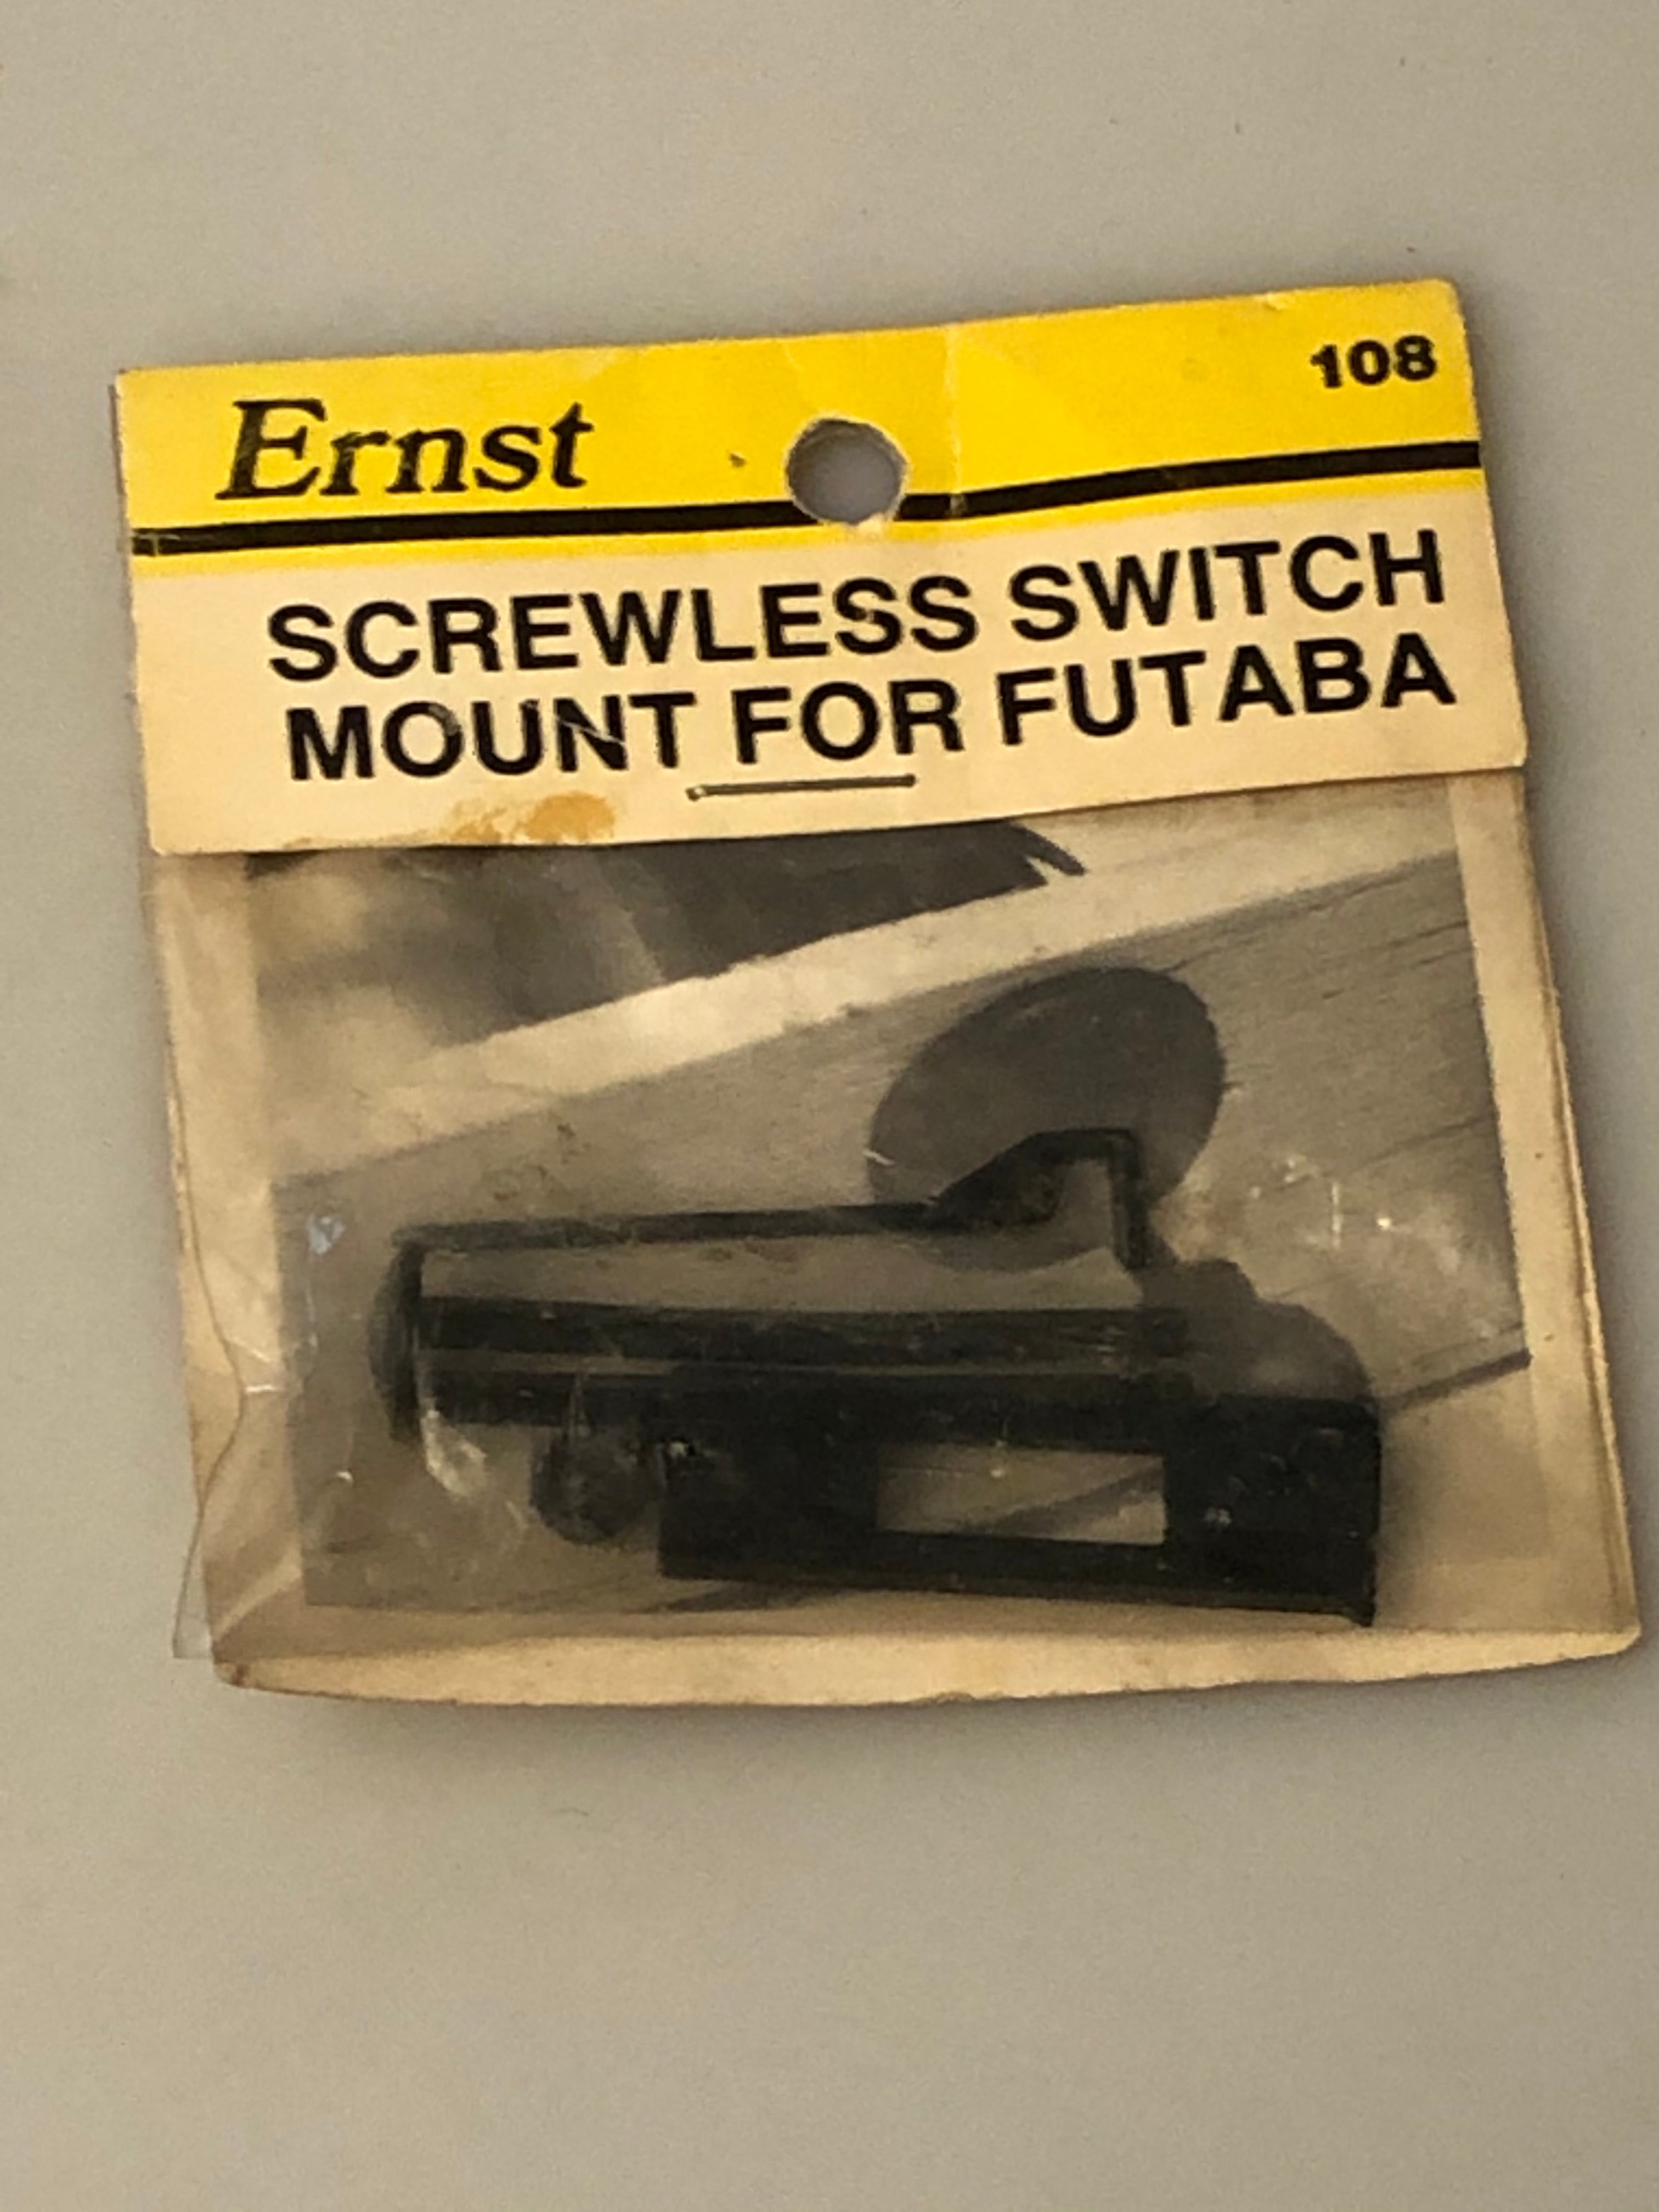 Ernst Screwless Switch Mount for Fut ERN108